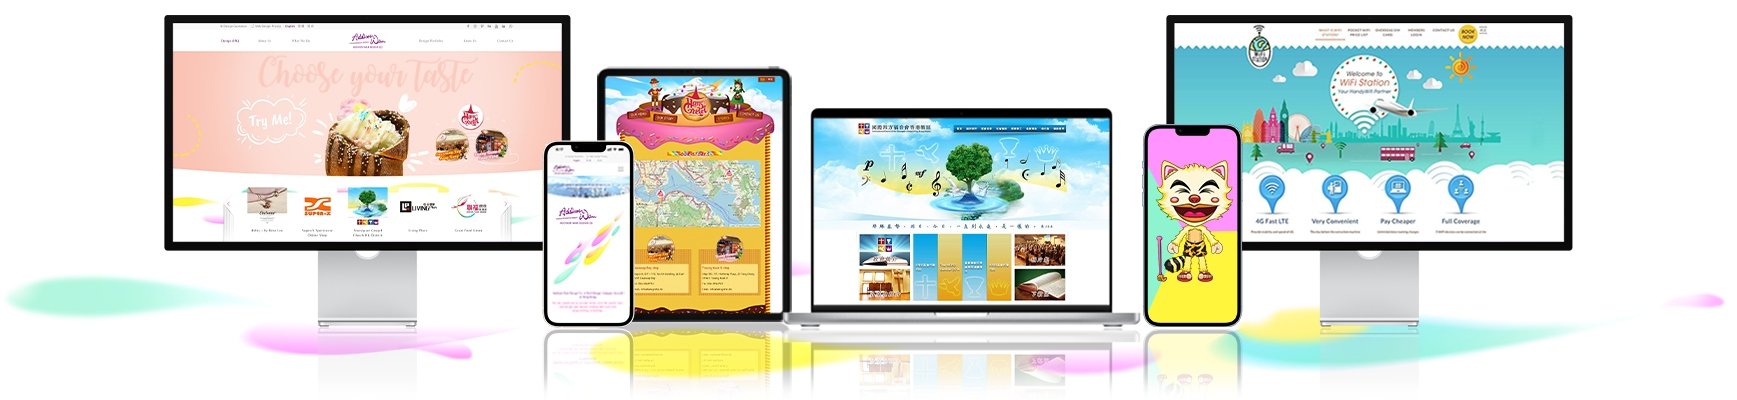 网页设计香港 - 网页设计和网上商店网站项目的详细与透明定价